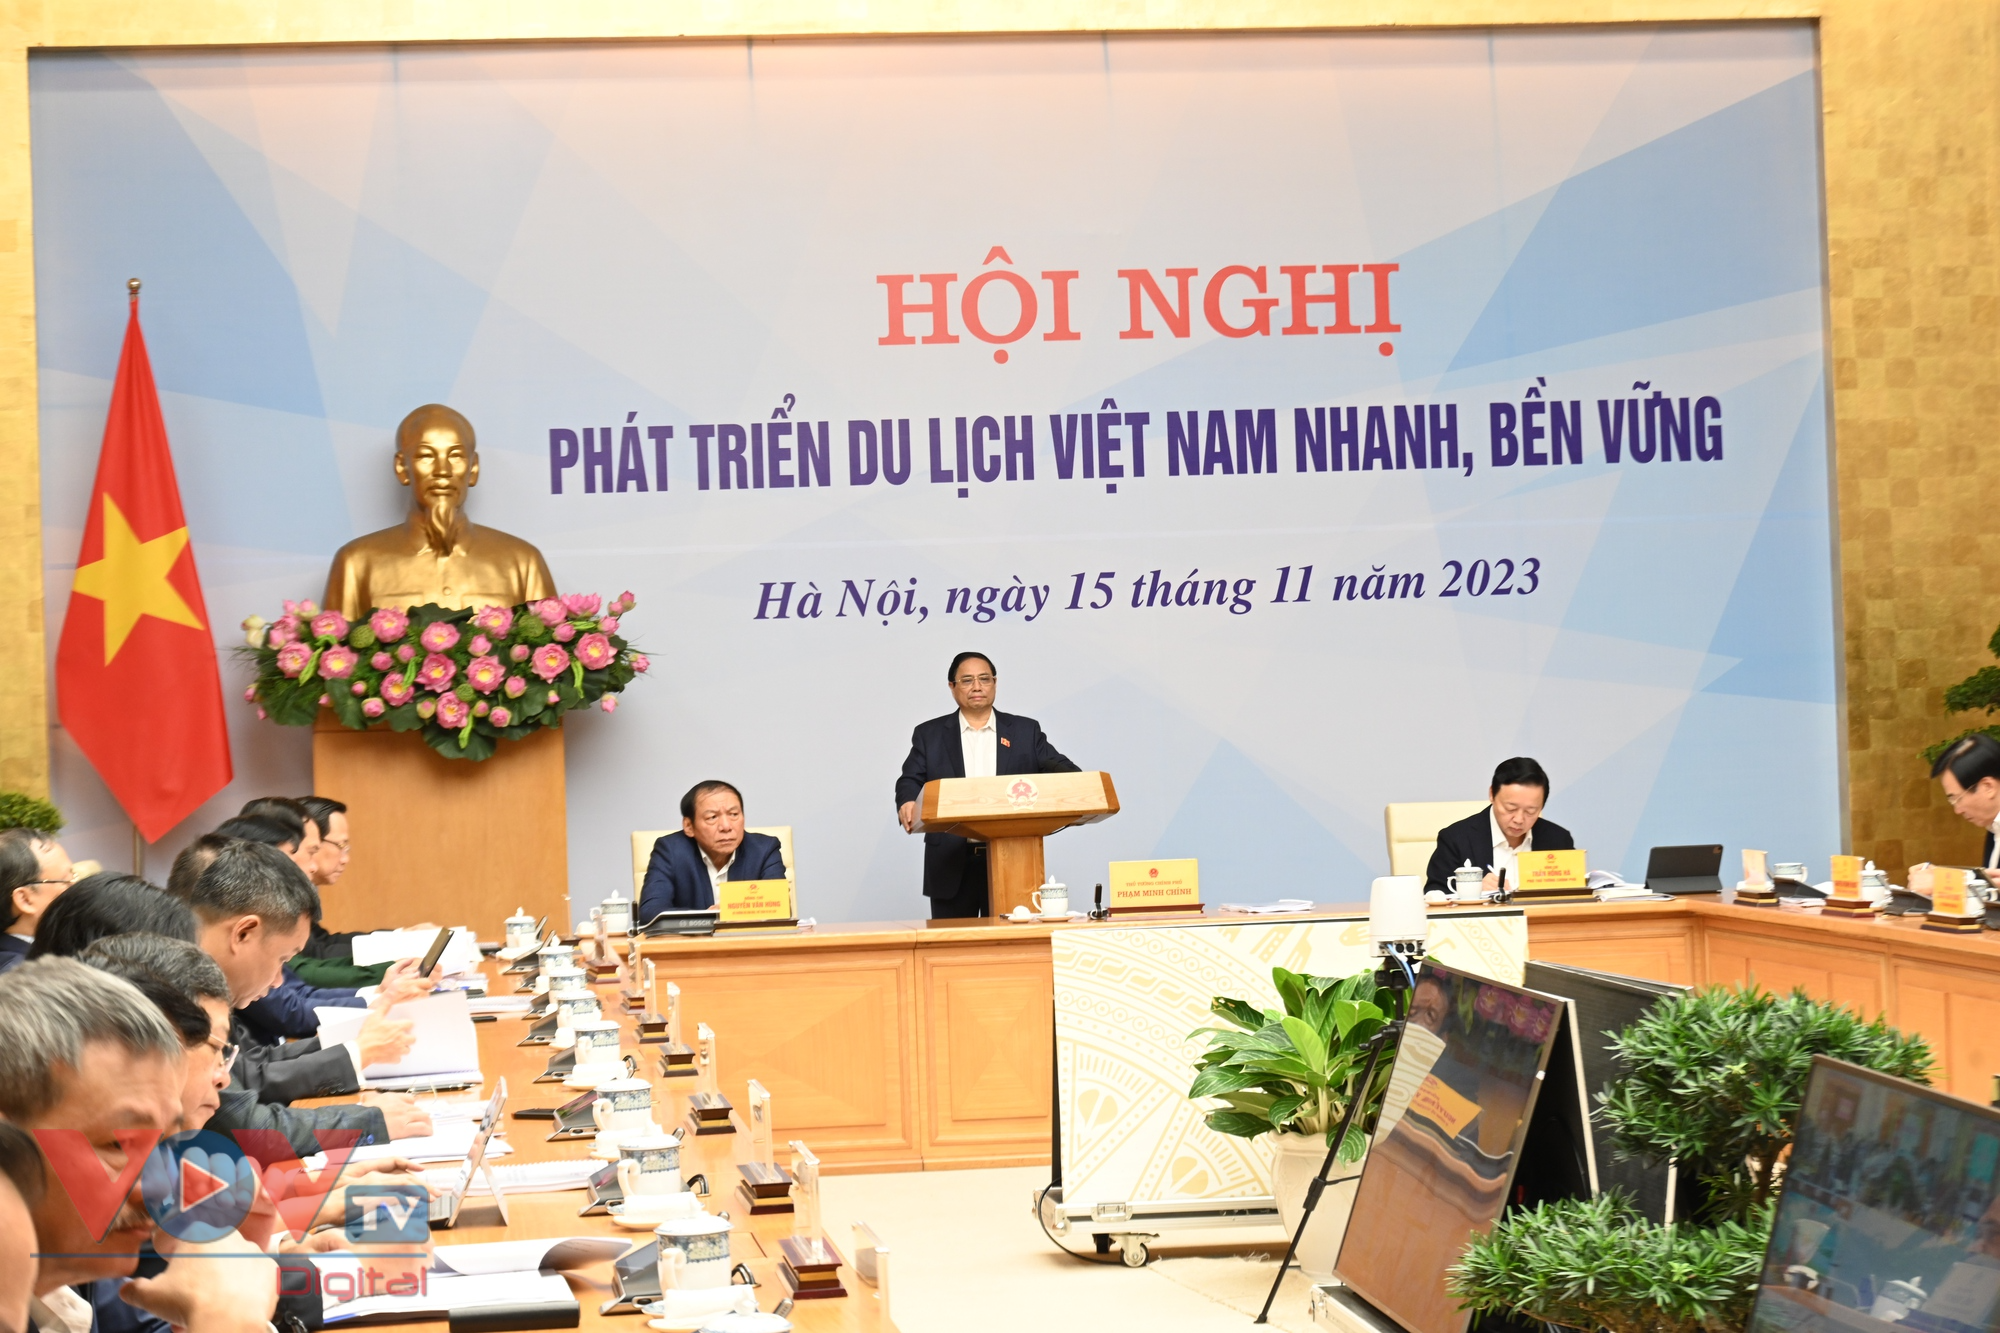 Thủ tướng: Tìm lời giải phát triển du lịch Việt Nam nhanh và bền vững- Ảnh 1.